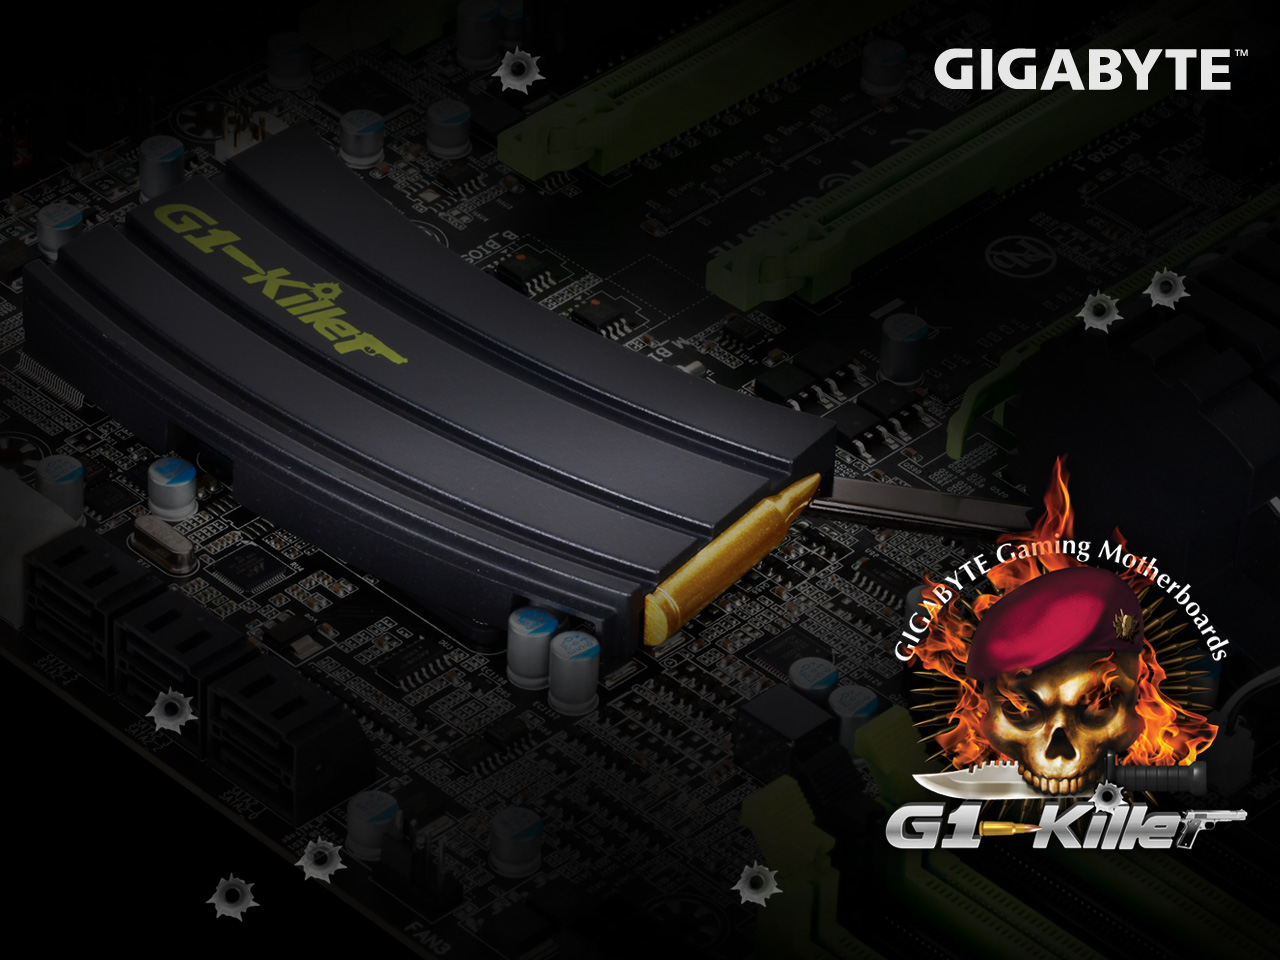 Gigabyte games k3. Гигабайт g1 Killer. Gigabyte Gaming коврик.